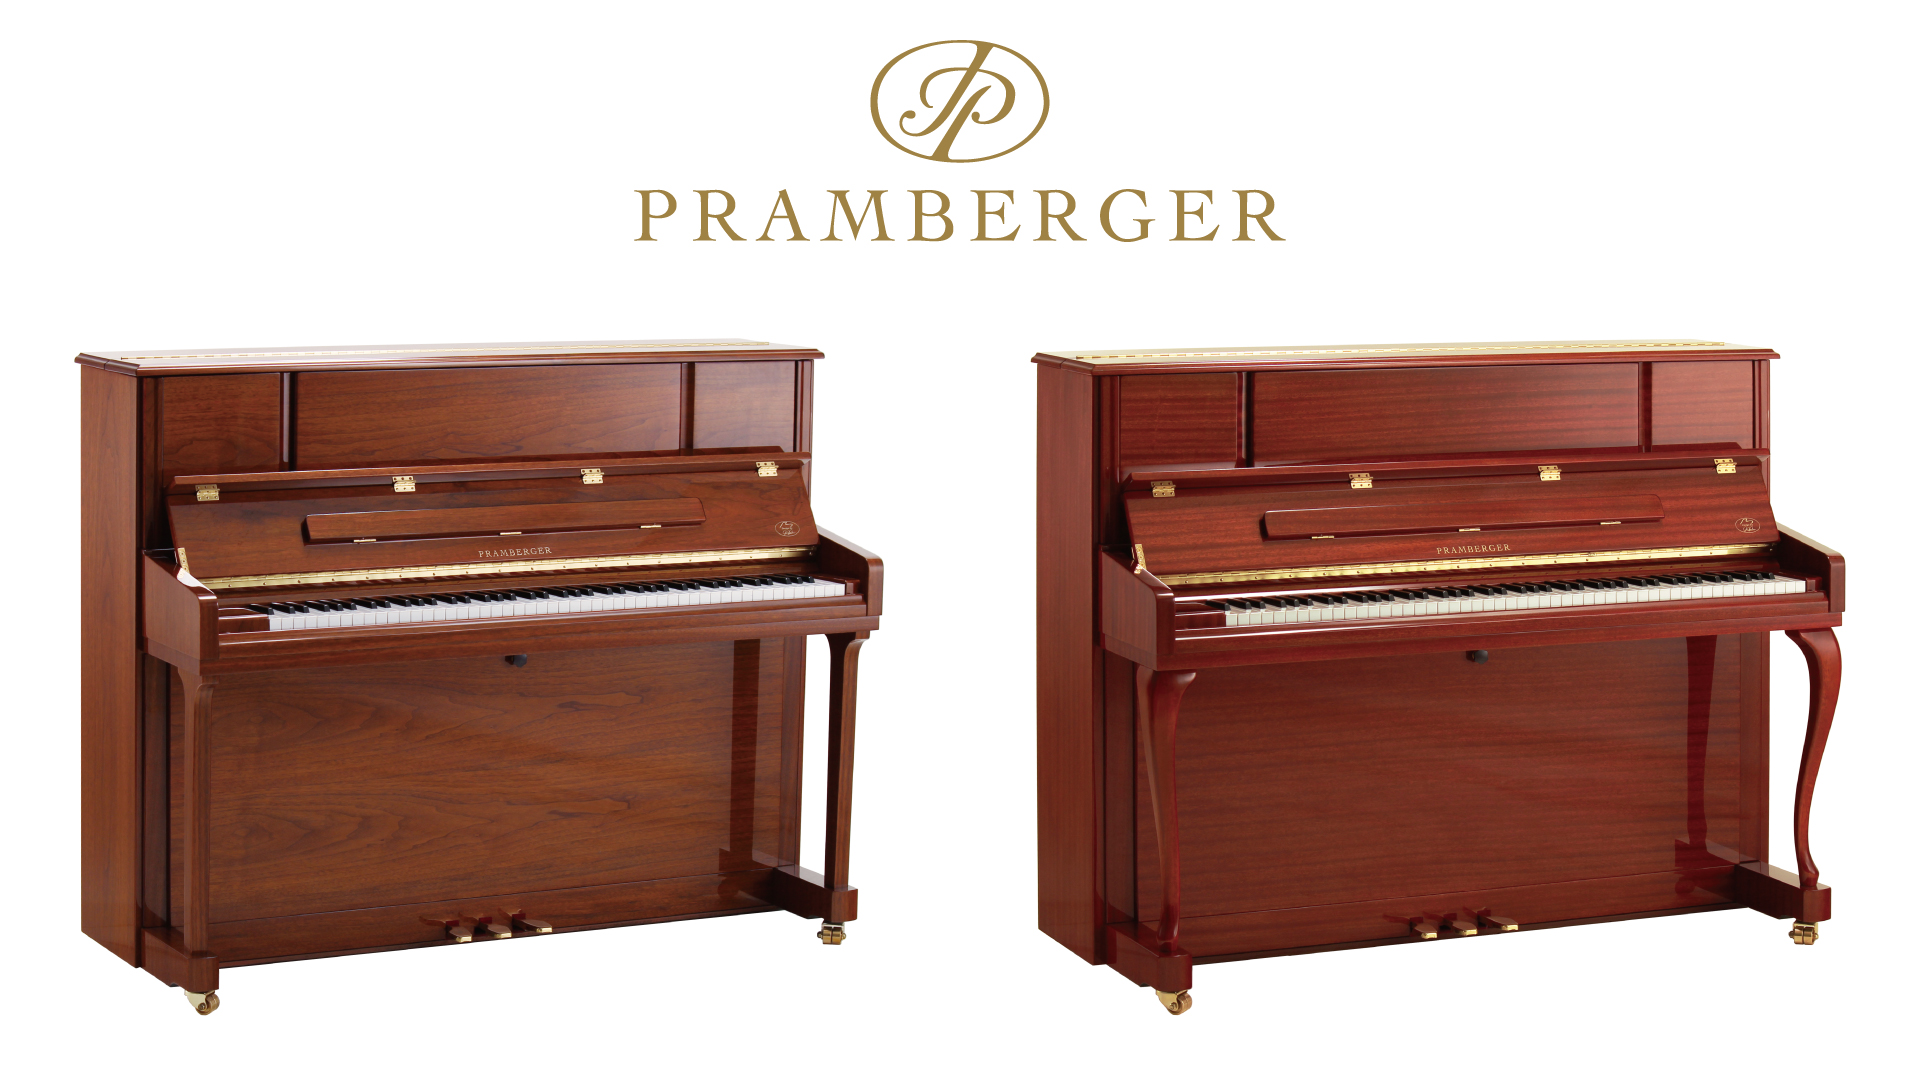 【新入荷情報】プレンバーガーから新設計・特別カラーを採用した日本限定モデルピアノ発売！